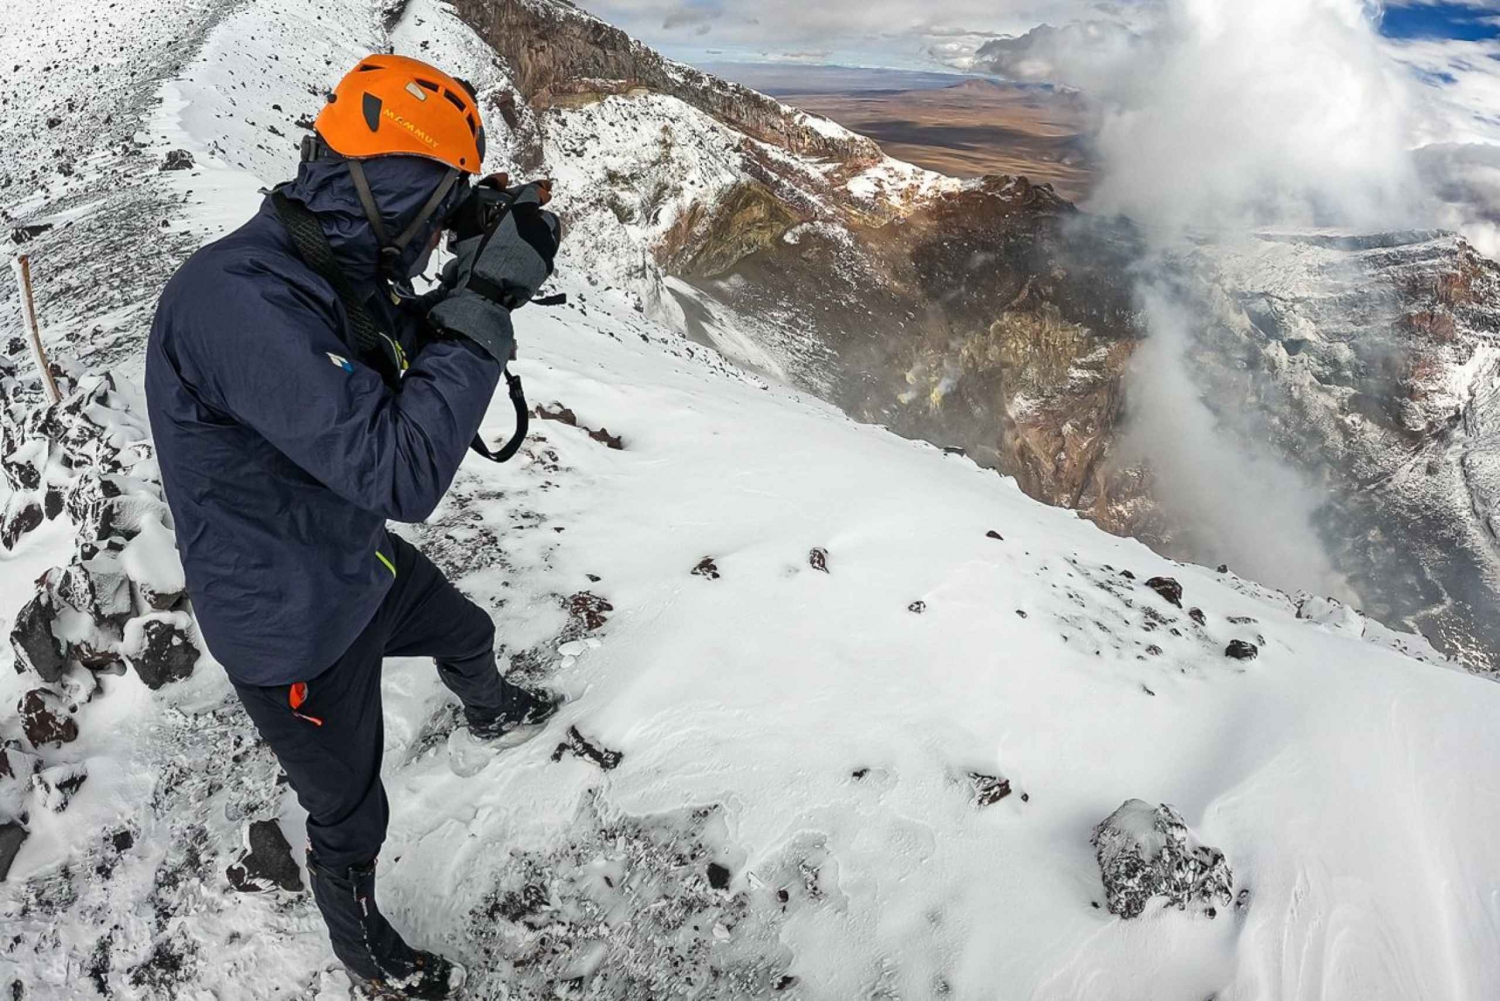 San Pedro de Atacama: Láscar Volcano Summit Hiking Day Trip